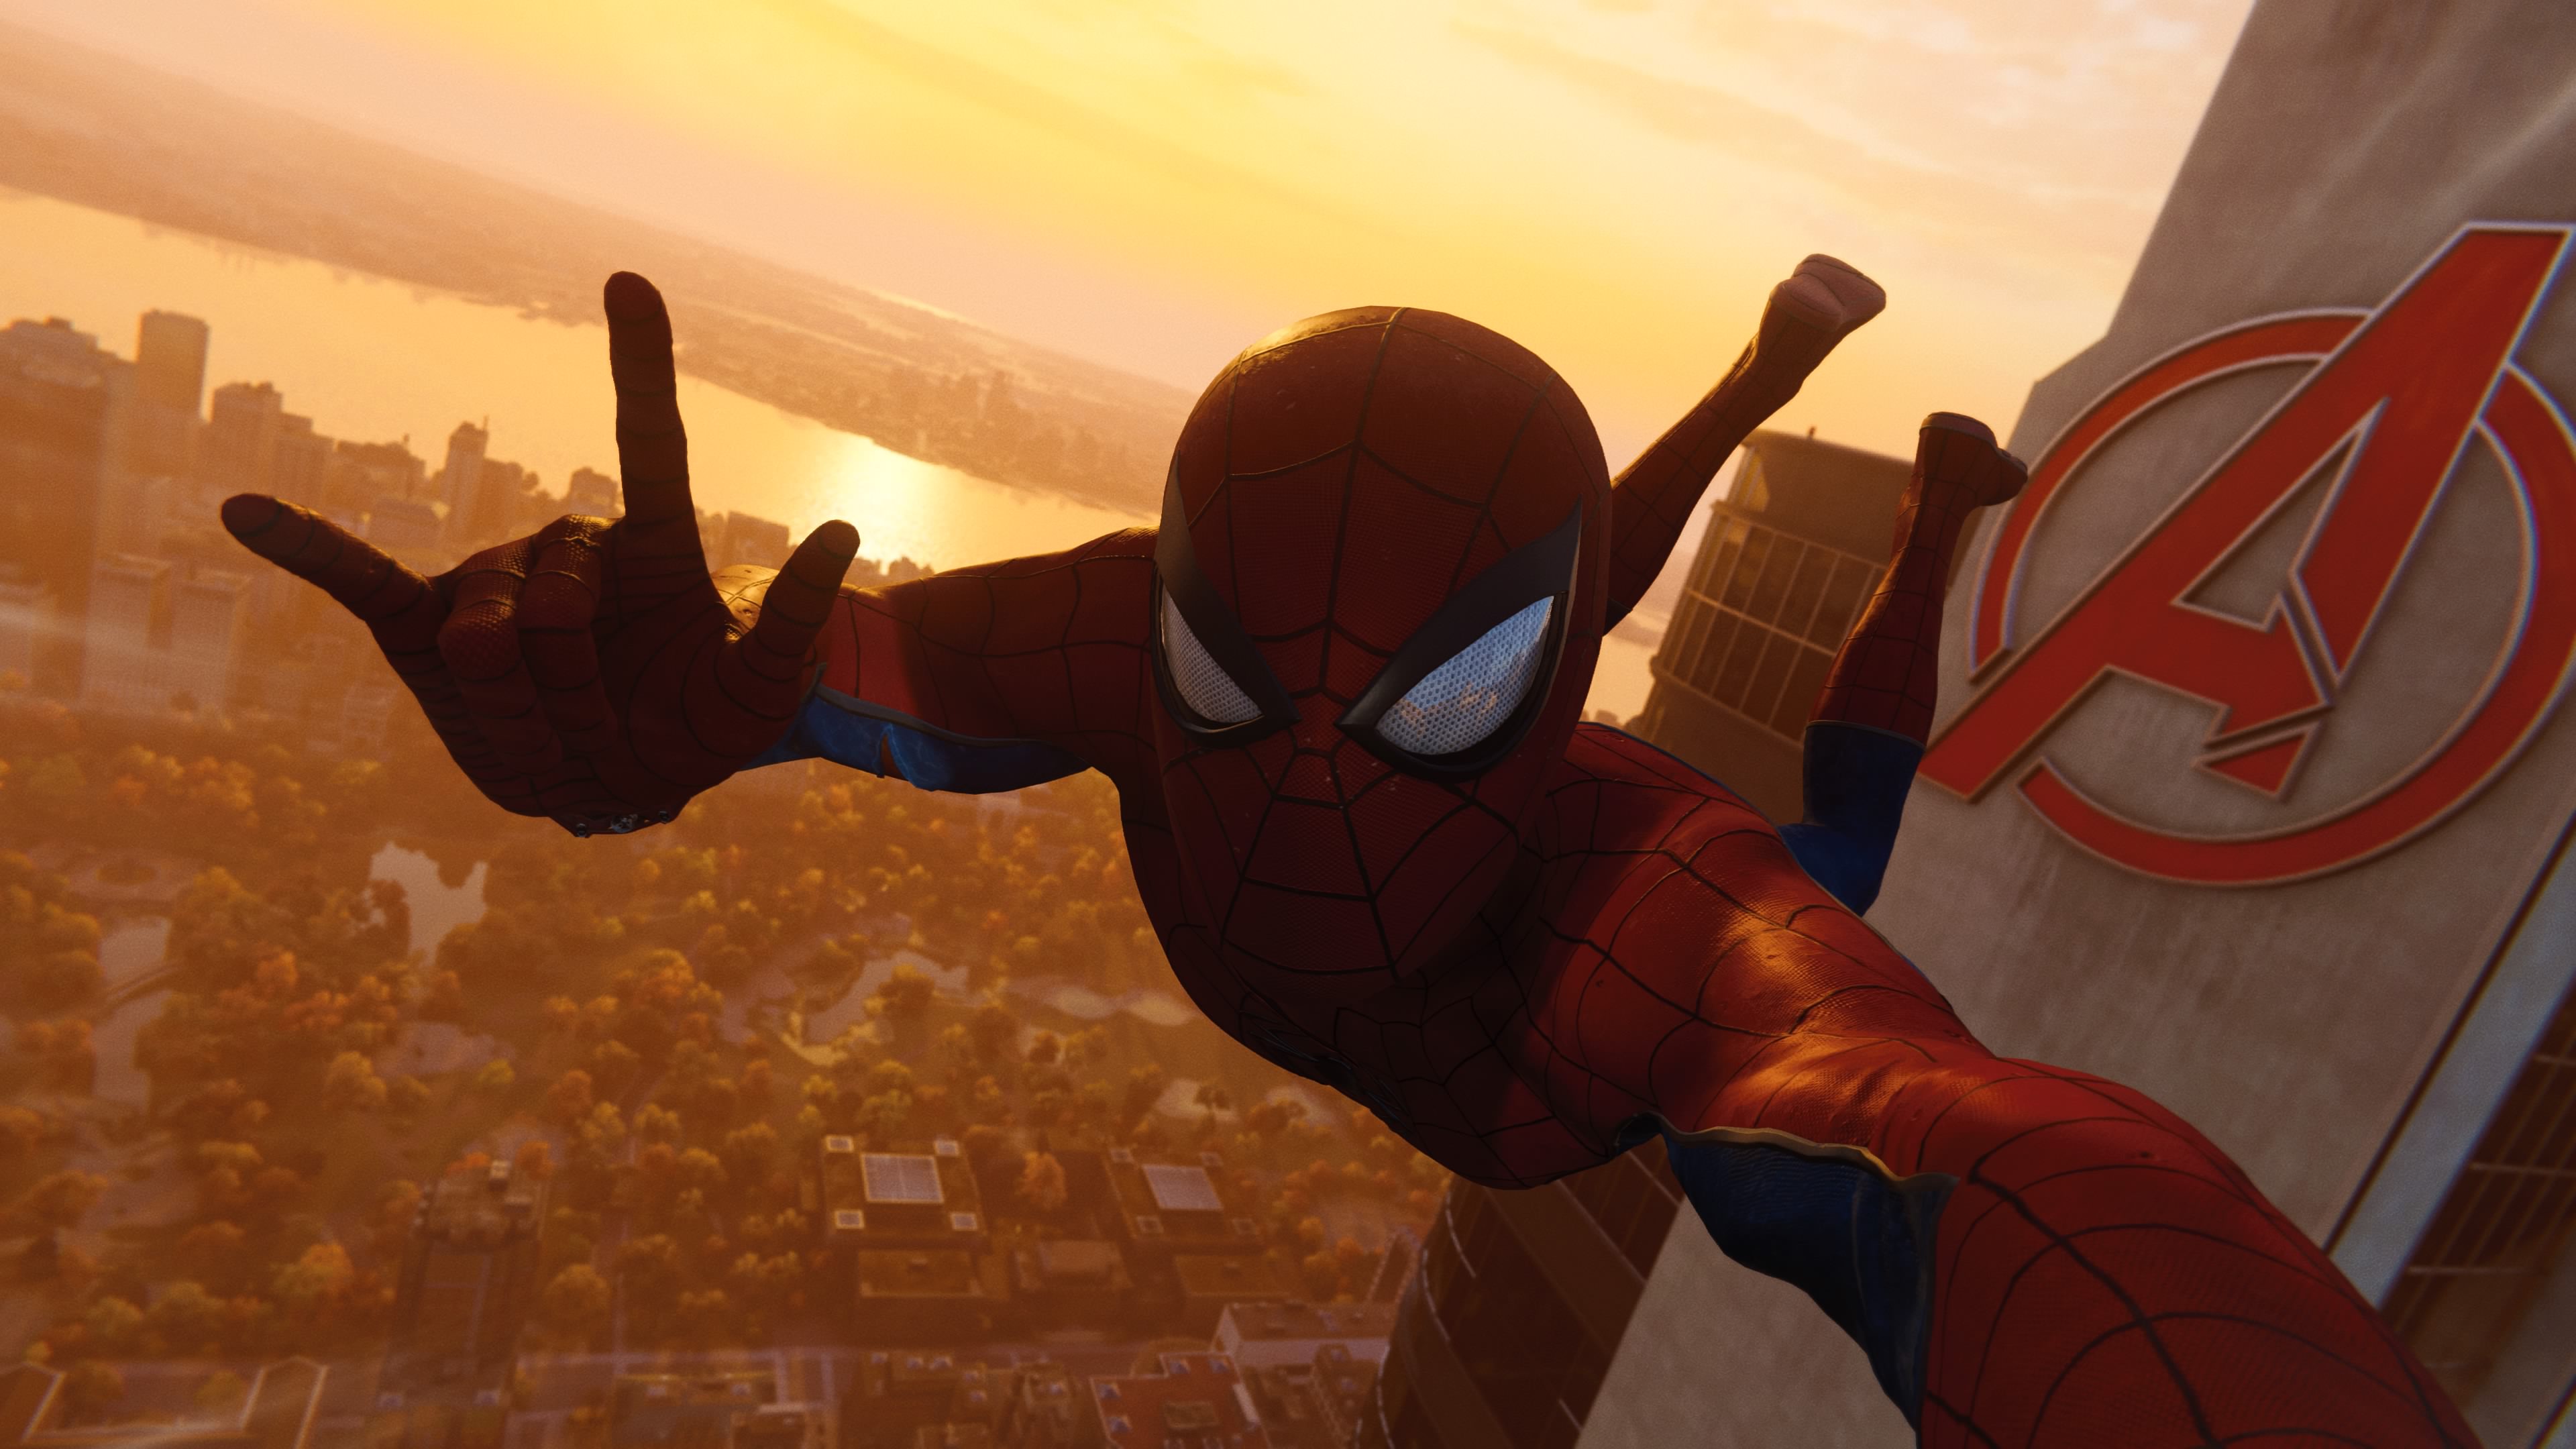 Wallpaper 4k Spiderman Taking Selfie Of Avengers Tower